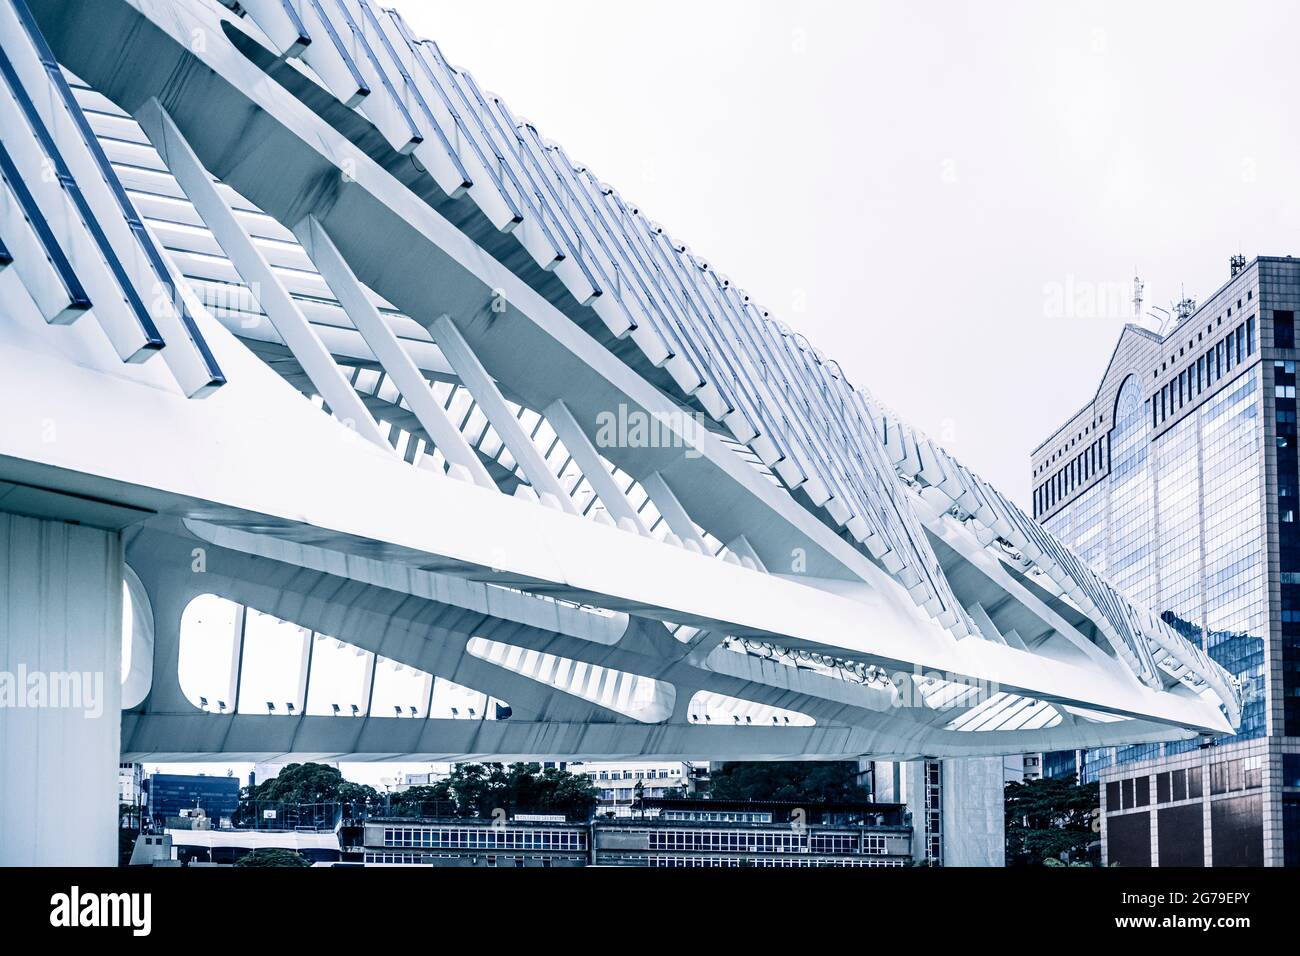 Blick auf das Museum von Morgen (Museu do Amanhã£), entworfen vom spanischen Architekten Santiago Calatrava und am Pier von Praça Mauá, Rio de Janeiro, Brasilien. Ein Punkt auf der Marathonroute für die Olympischen Spiele 2016 Stockfoto